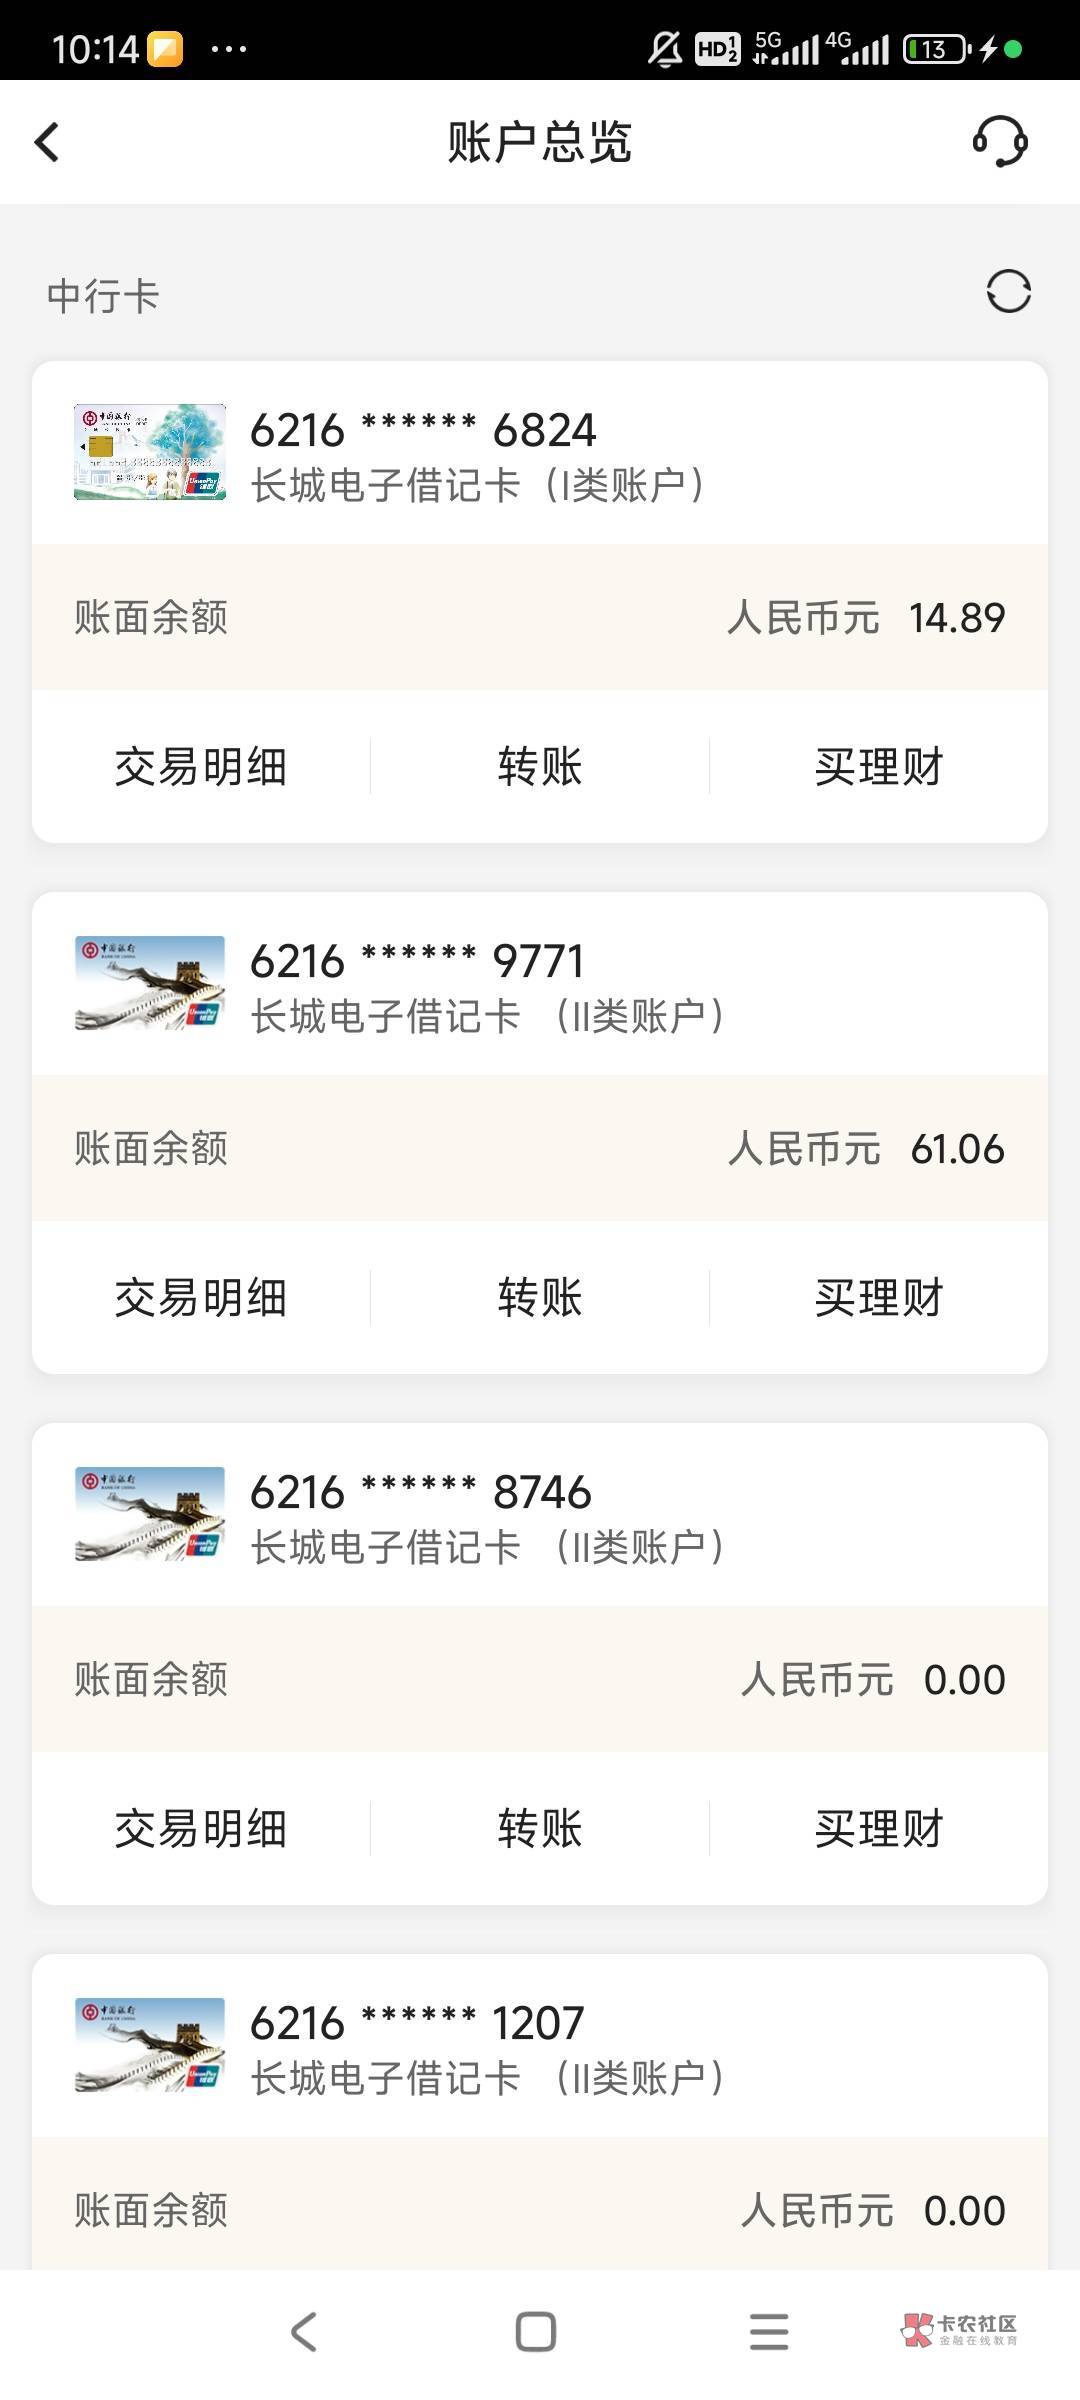 上海中行二类被冻结了，没有打过，只有小额微信支付宝提现和转账，其他不活跃二类都是90 / 作者:q1761950922。 / 